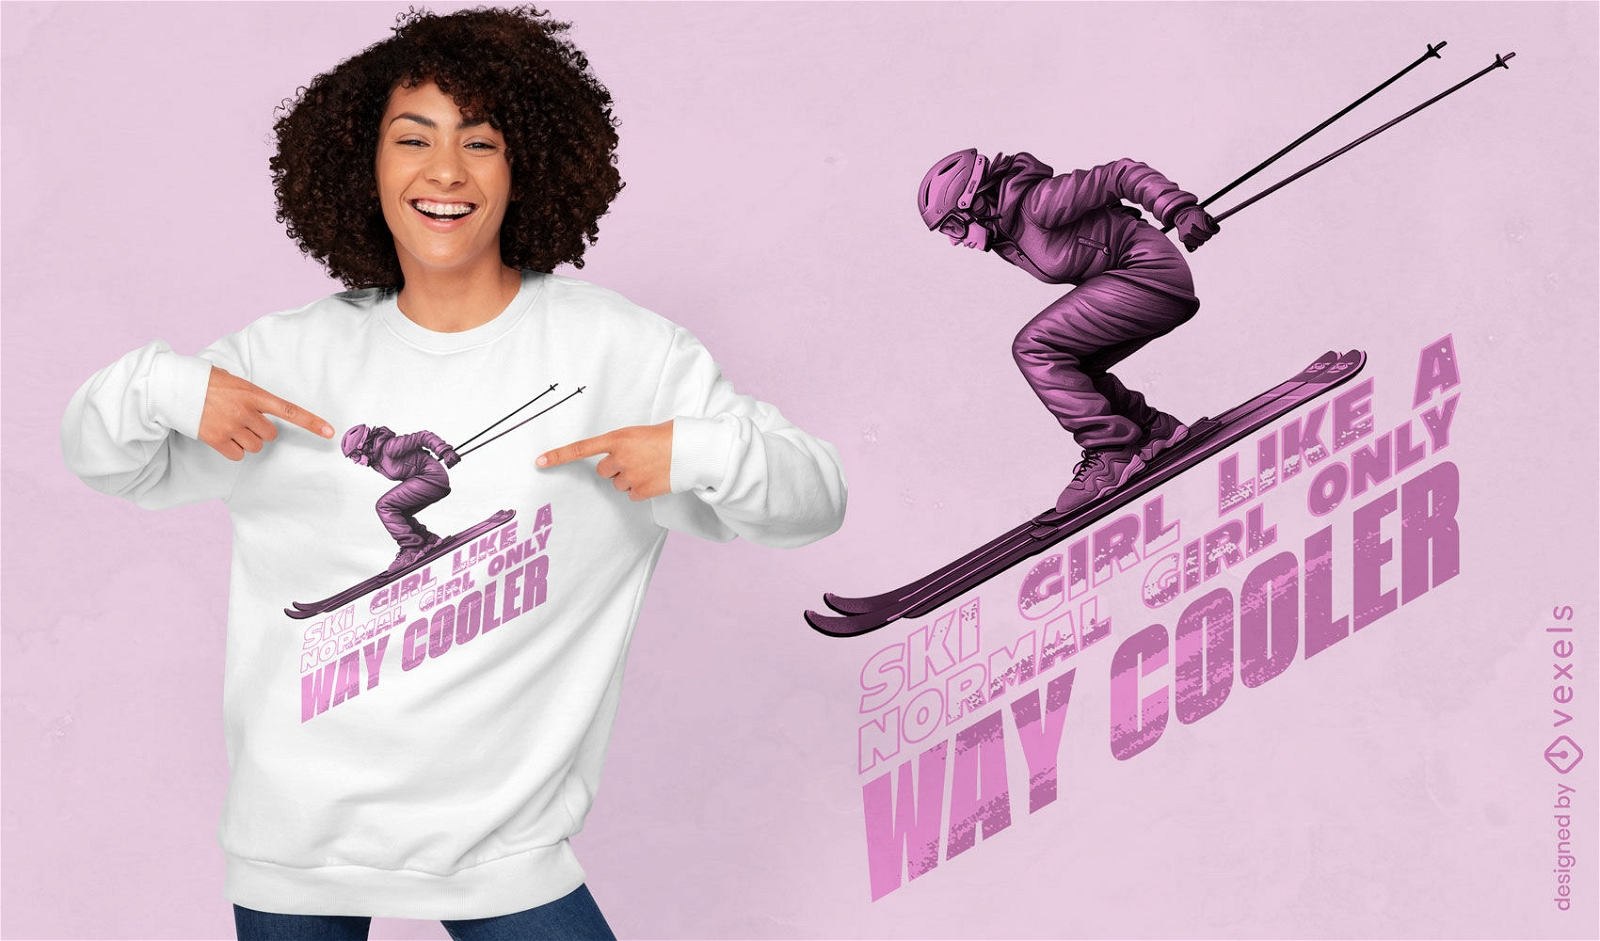 Diseño de camiseta con cita de acción de esquiador.